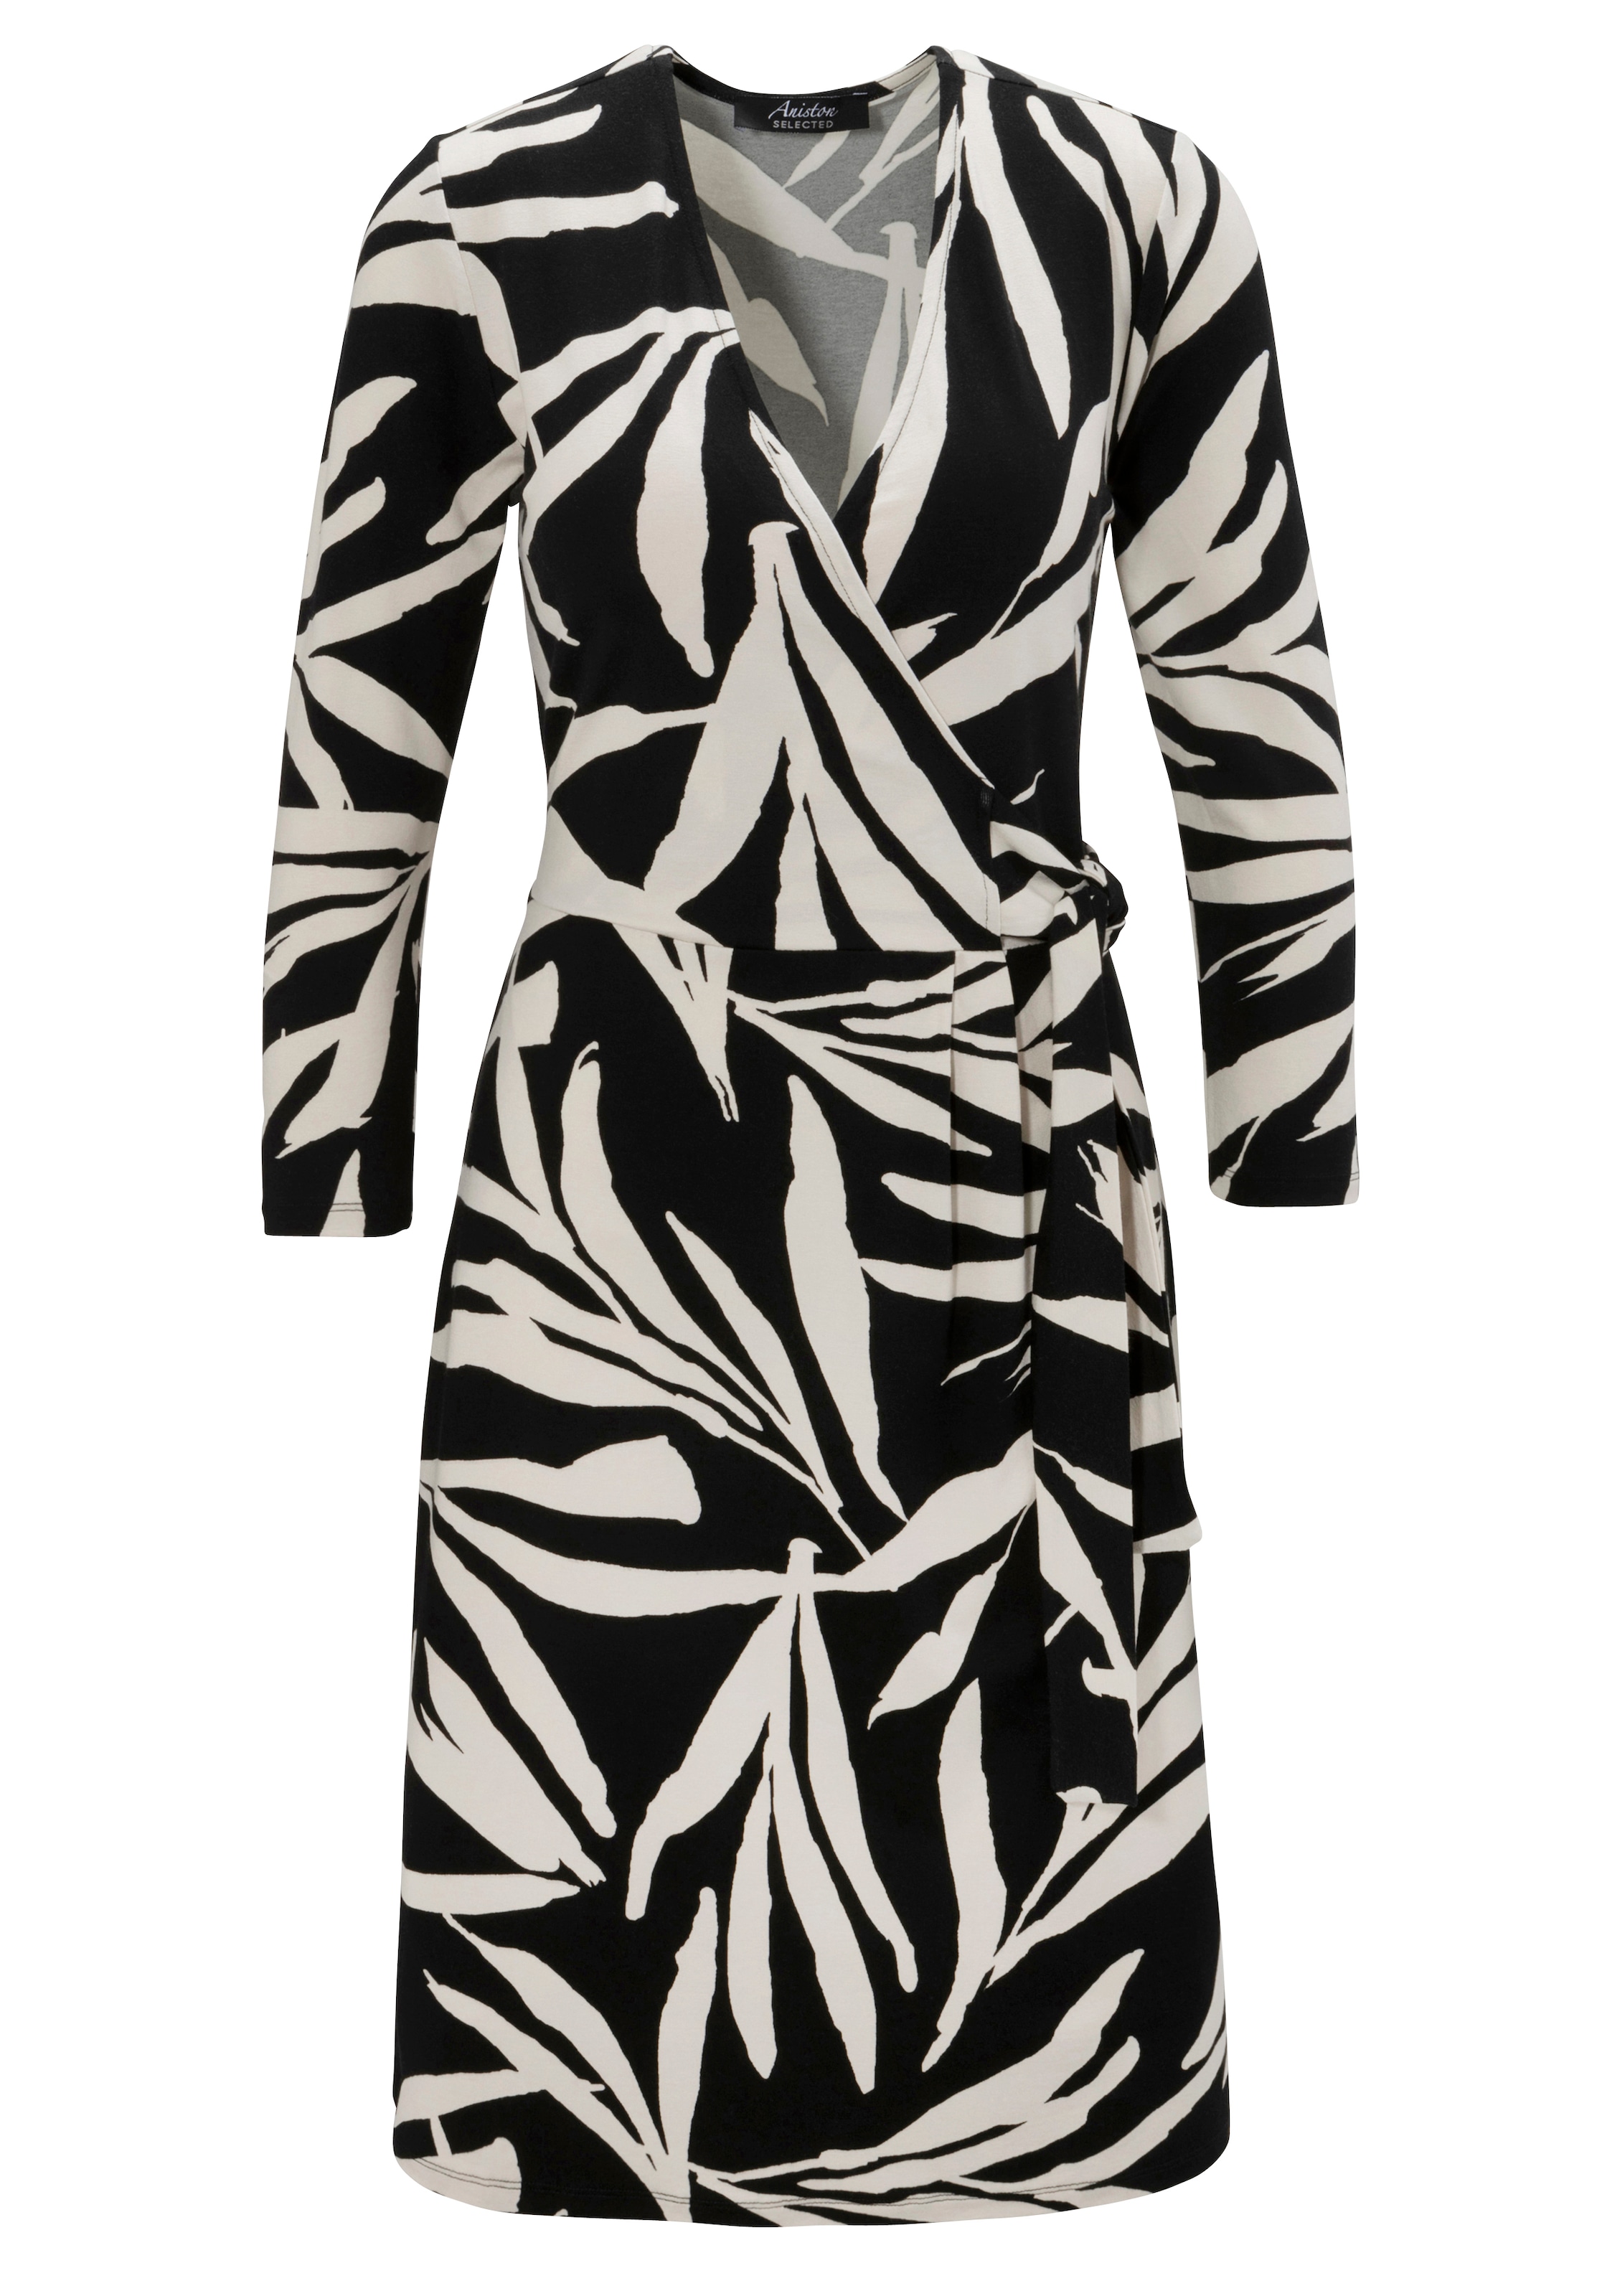 SELECTED | BAUR Aniston femininer Jerseykleid, für NEUE - KOLLEKTION Wickeloptik Blätterdruck und mit bestellen